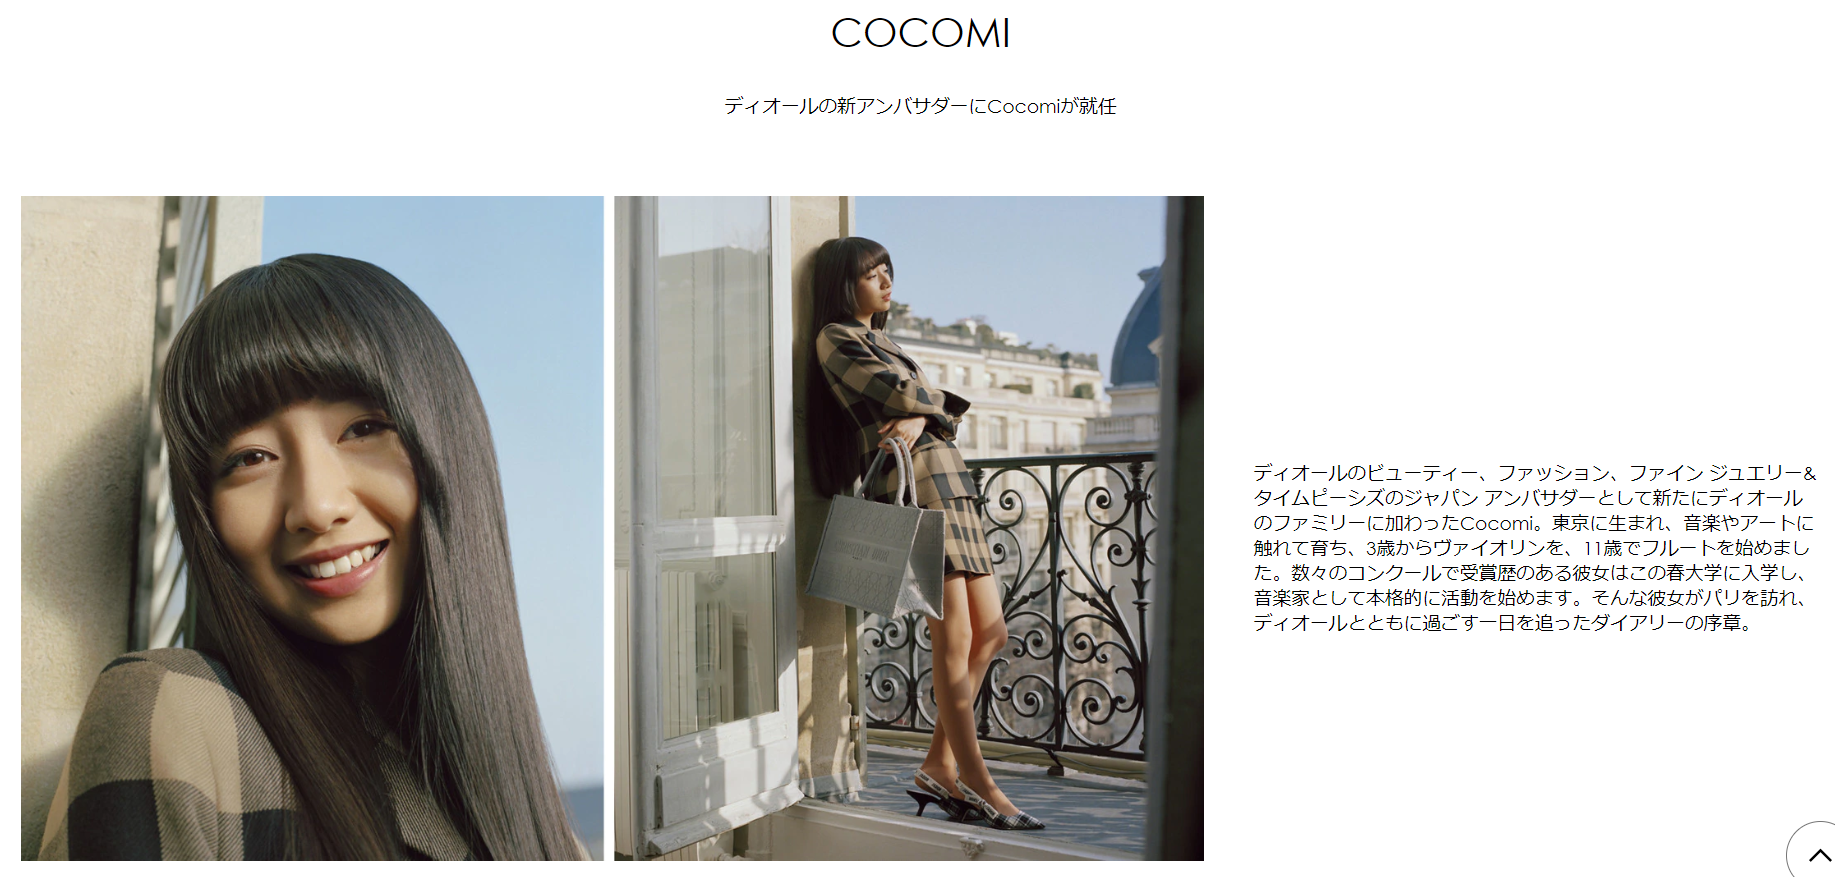 Diorのアンバサダーに就任したキムタクの長女Cocomi